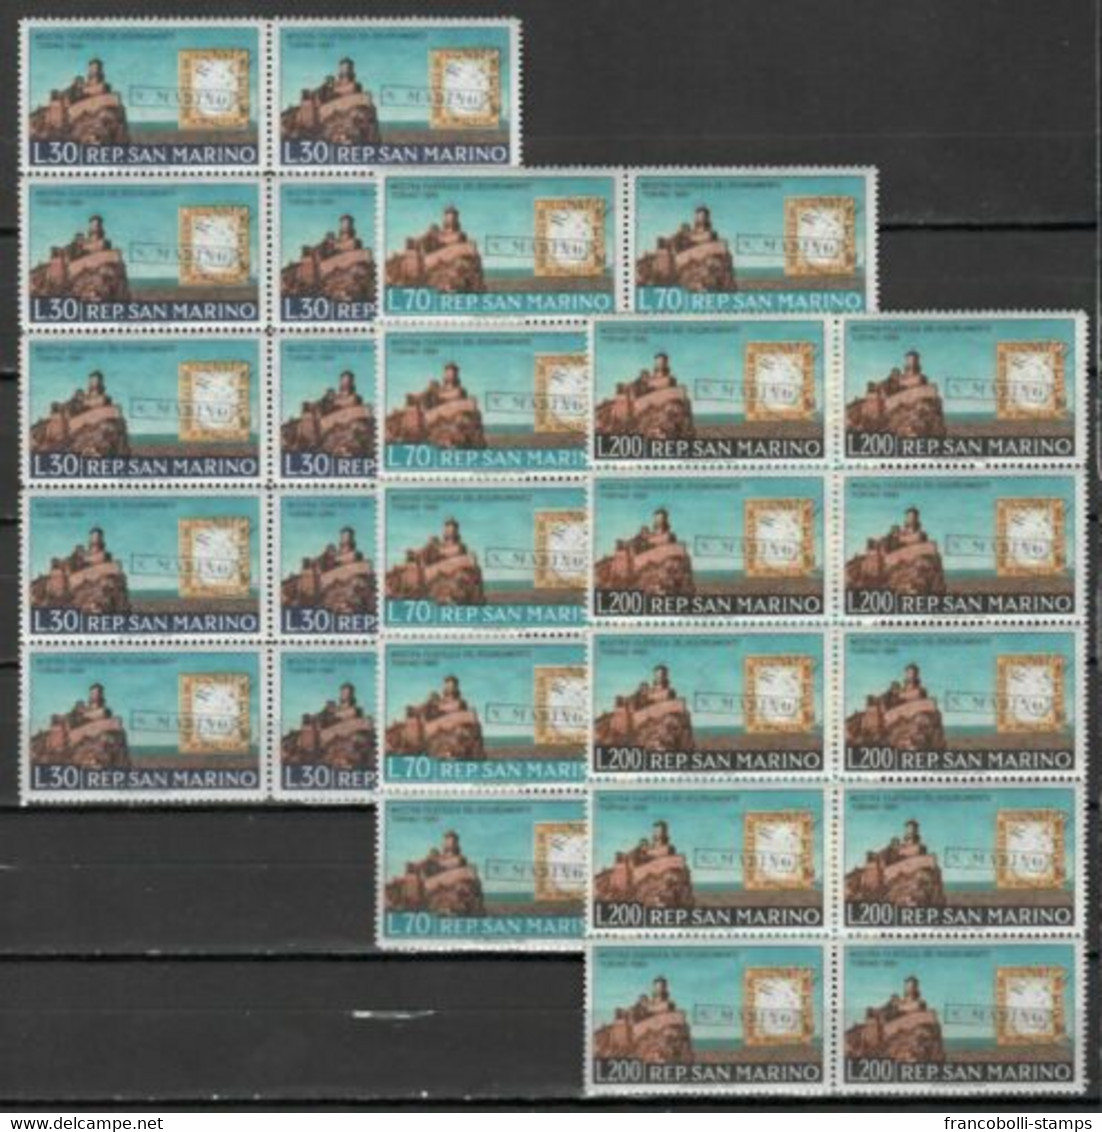 S32737 DEALER STOCK SAN MARINO MNH 1961 Risorgimento Stamps On Stamps 3v 10 SETS - Verzamelingen & Reeksen